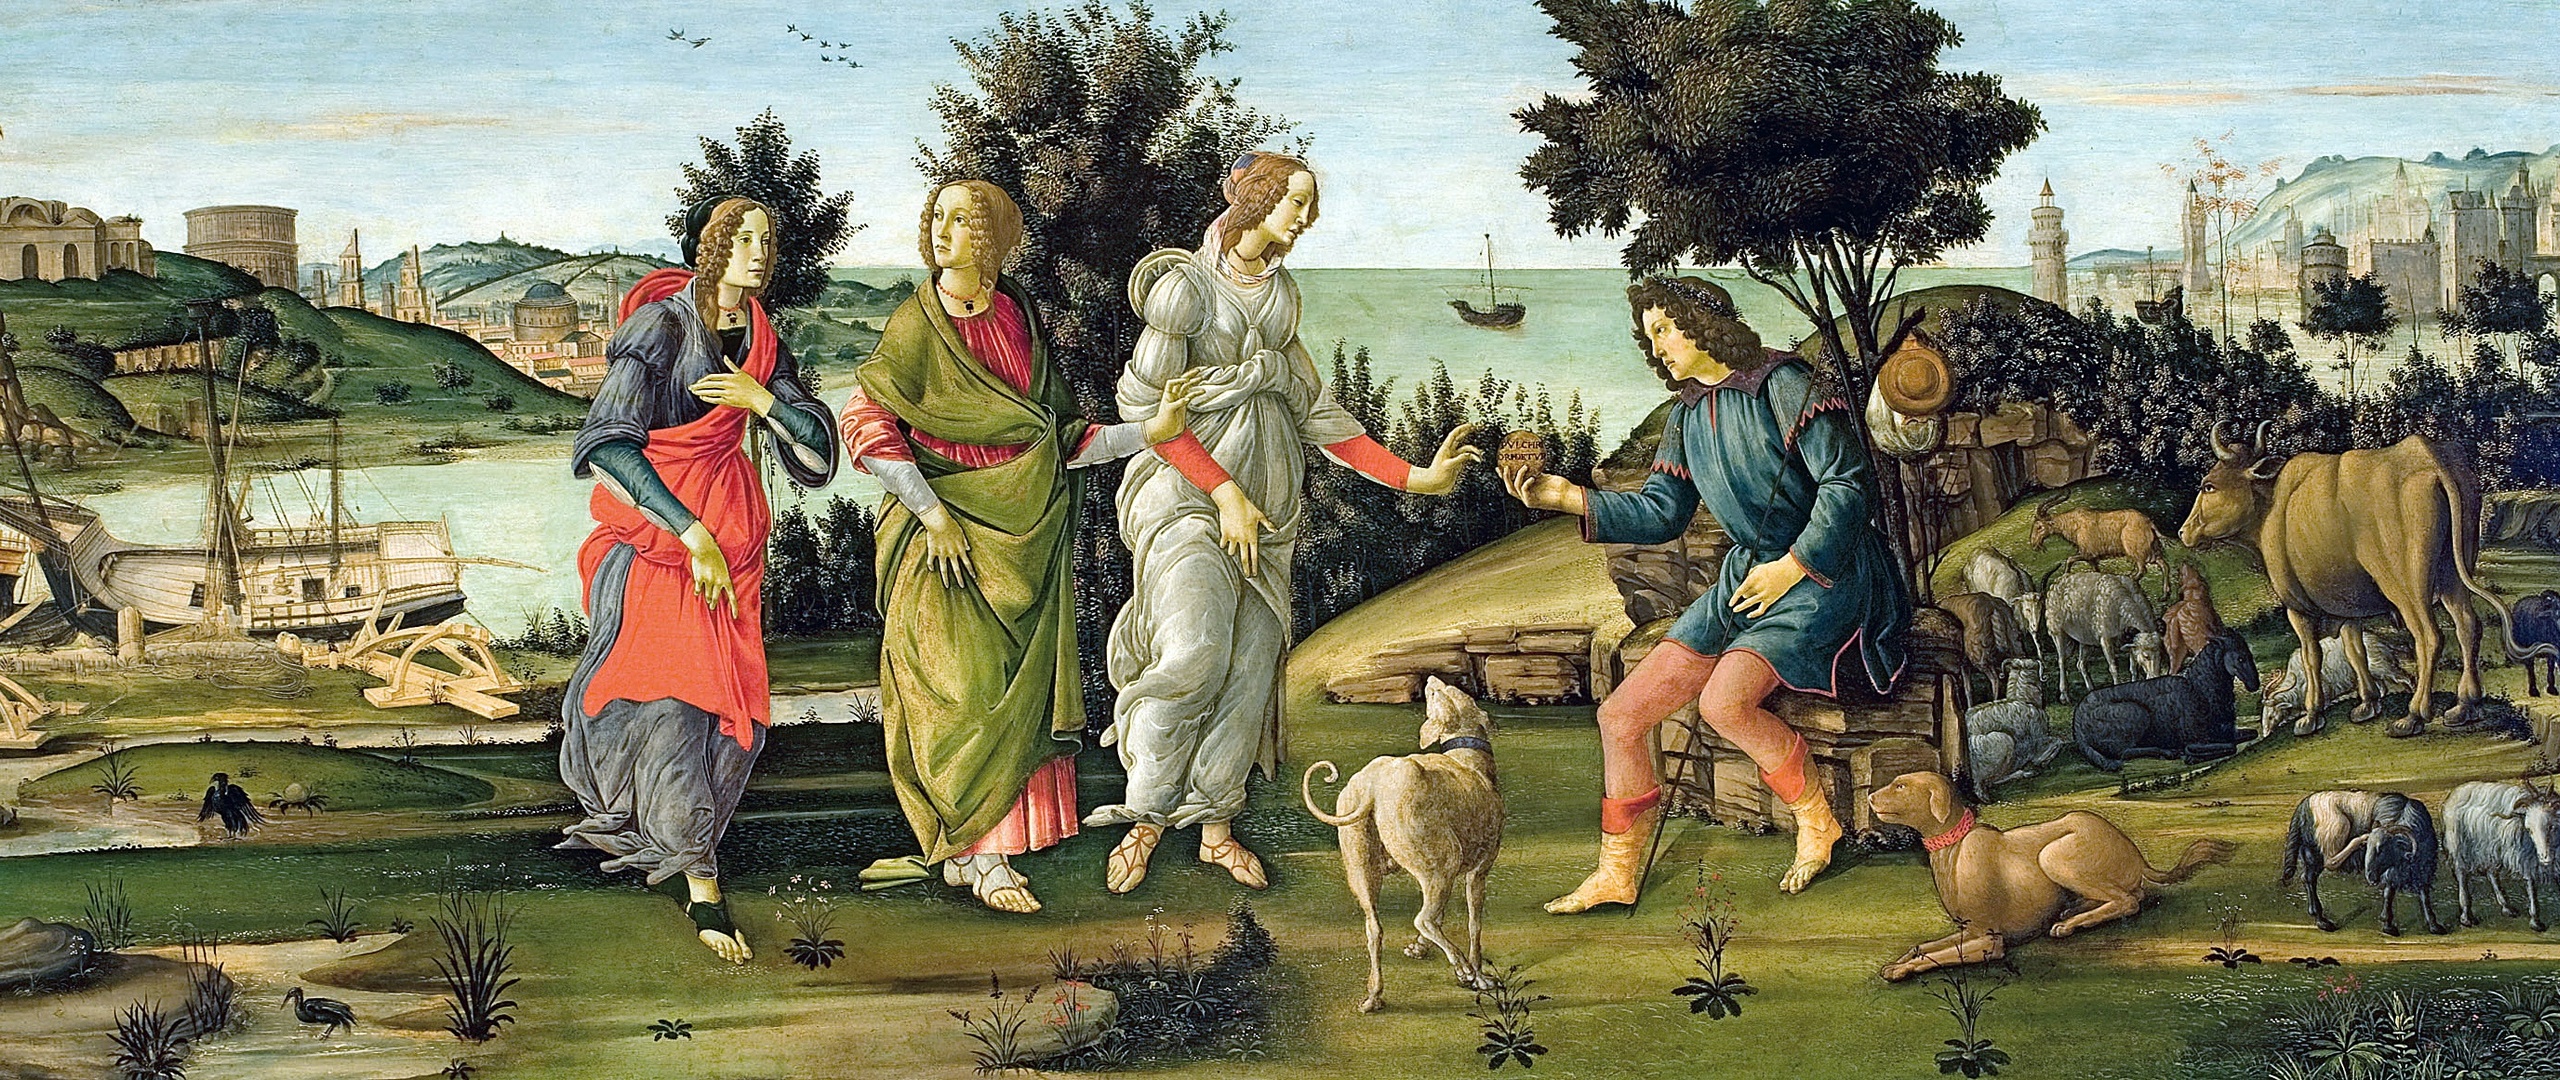 Pictures Sandro Botticelli Judgement Of Paris Pictorial